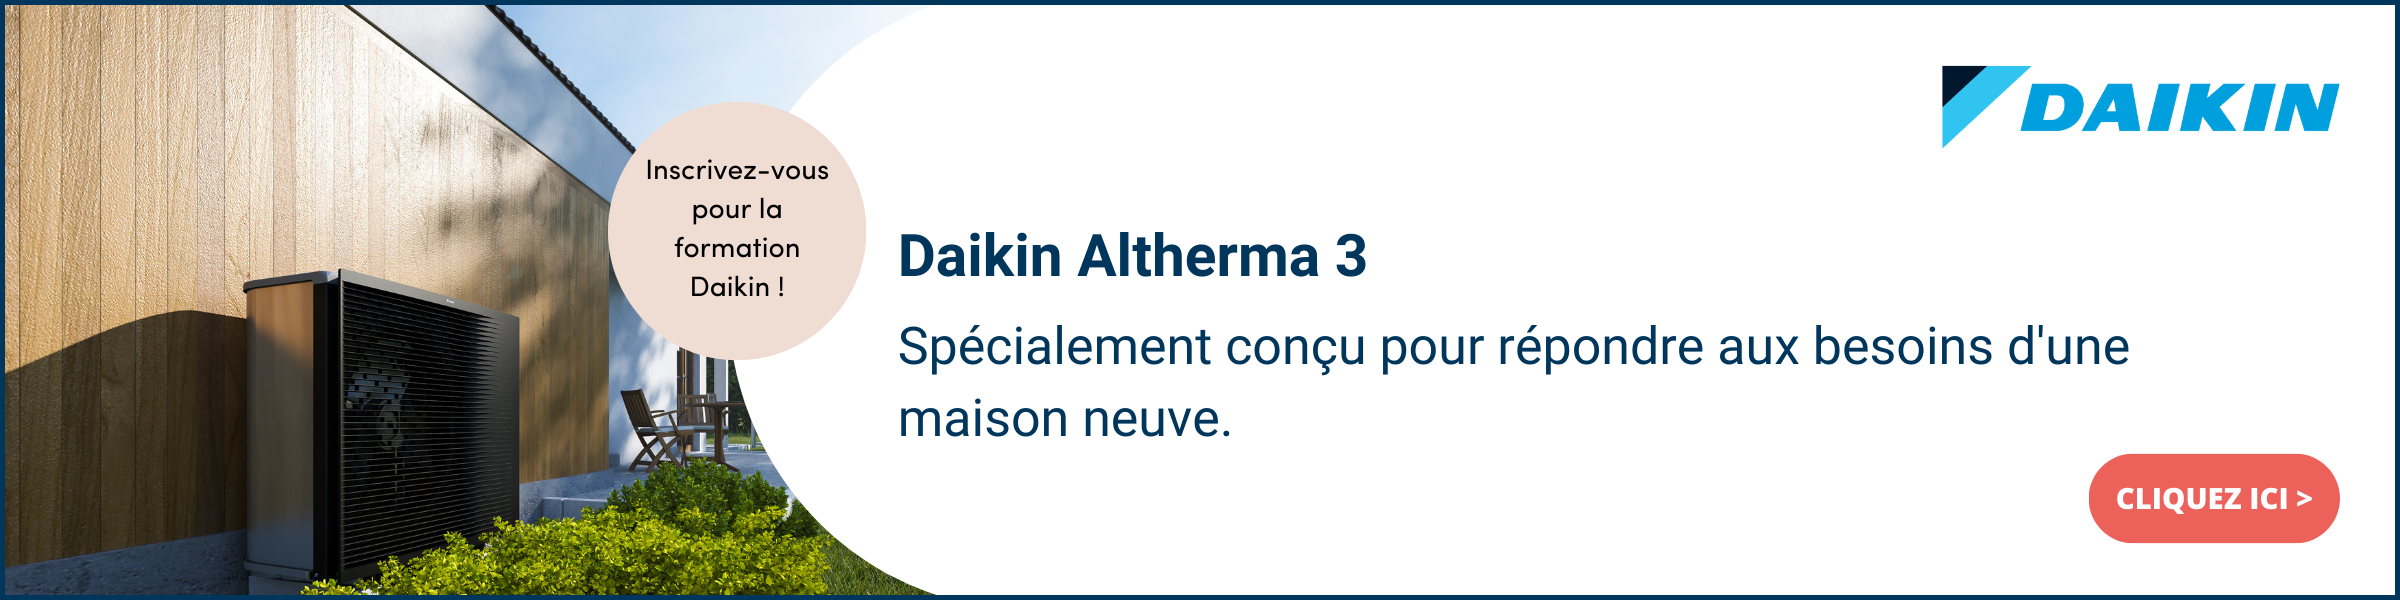 Daikin Altherma 3 FR.png